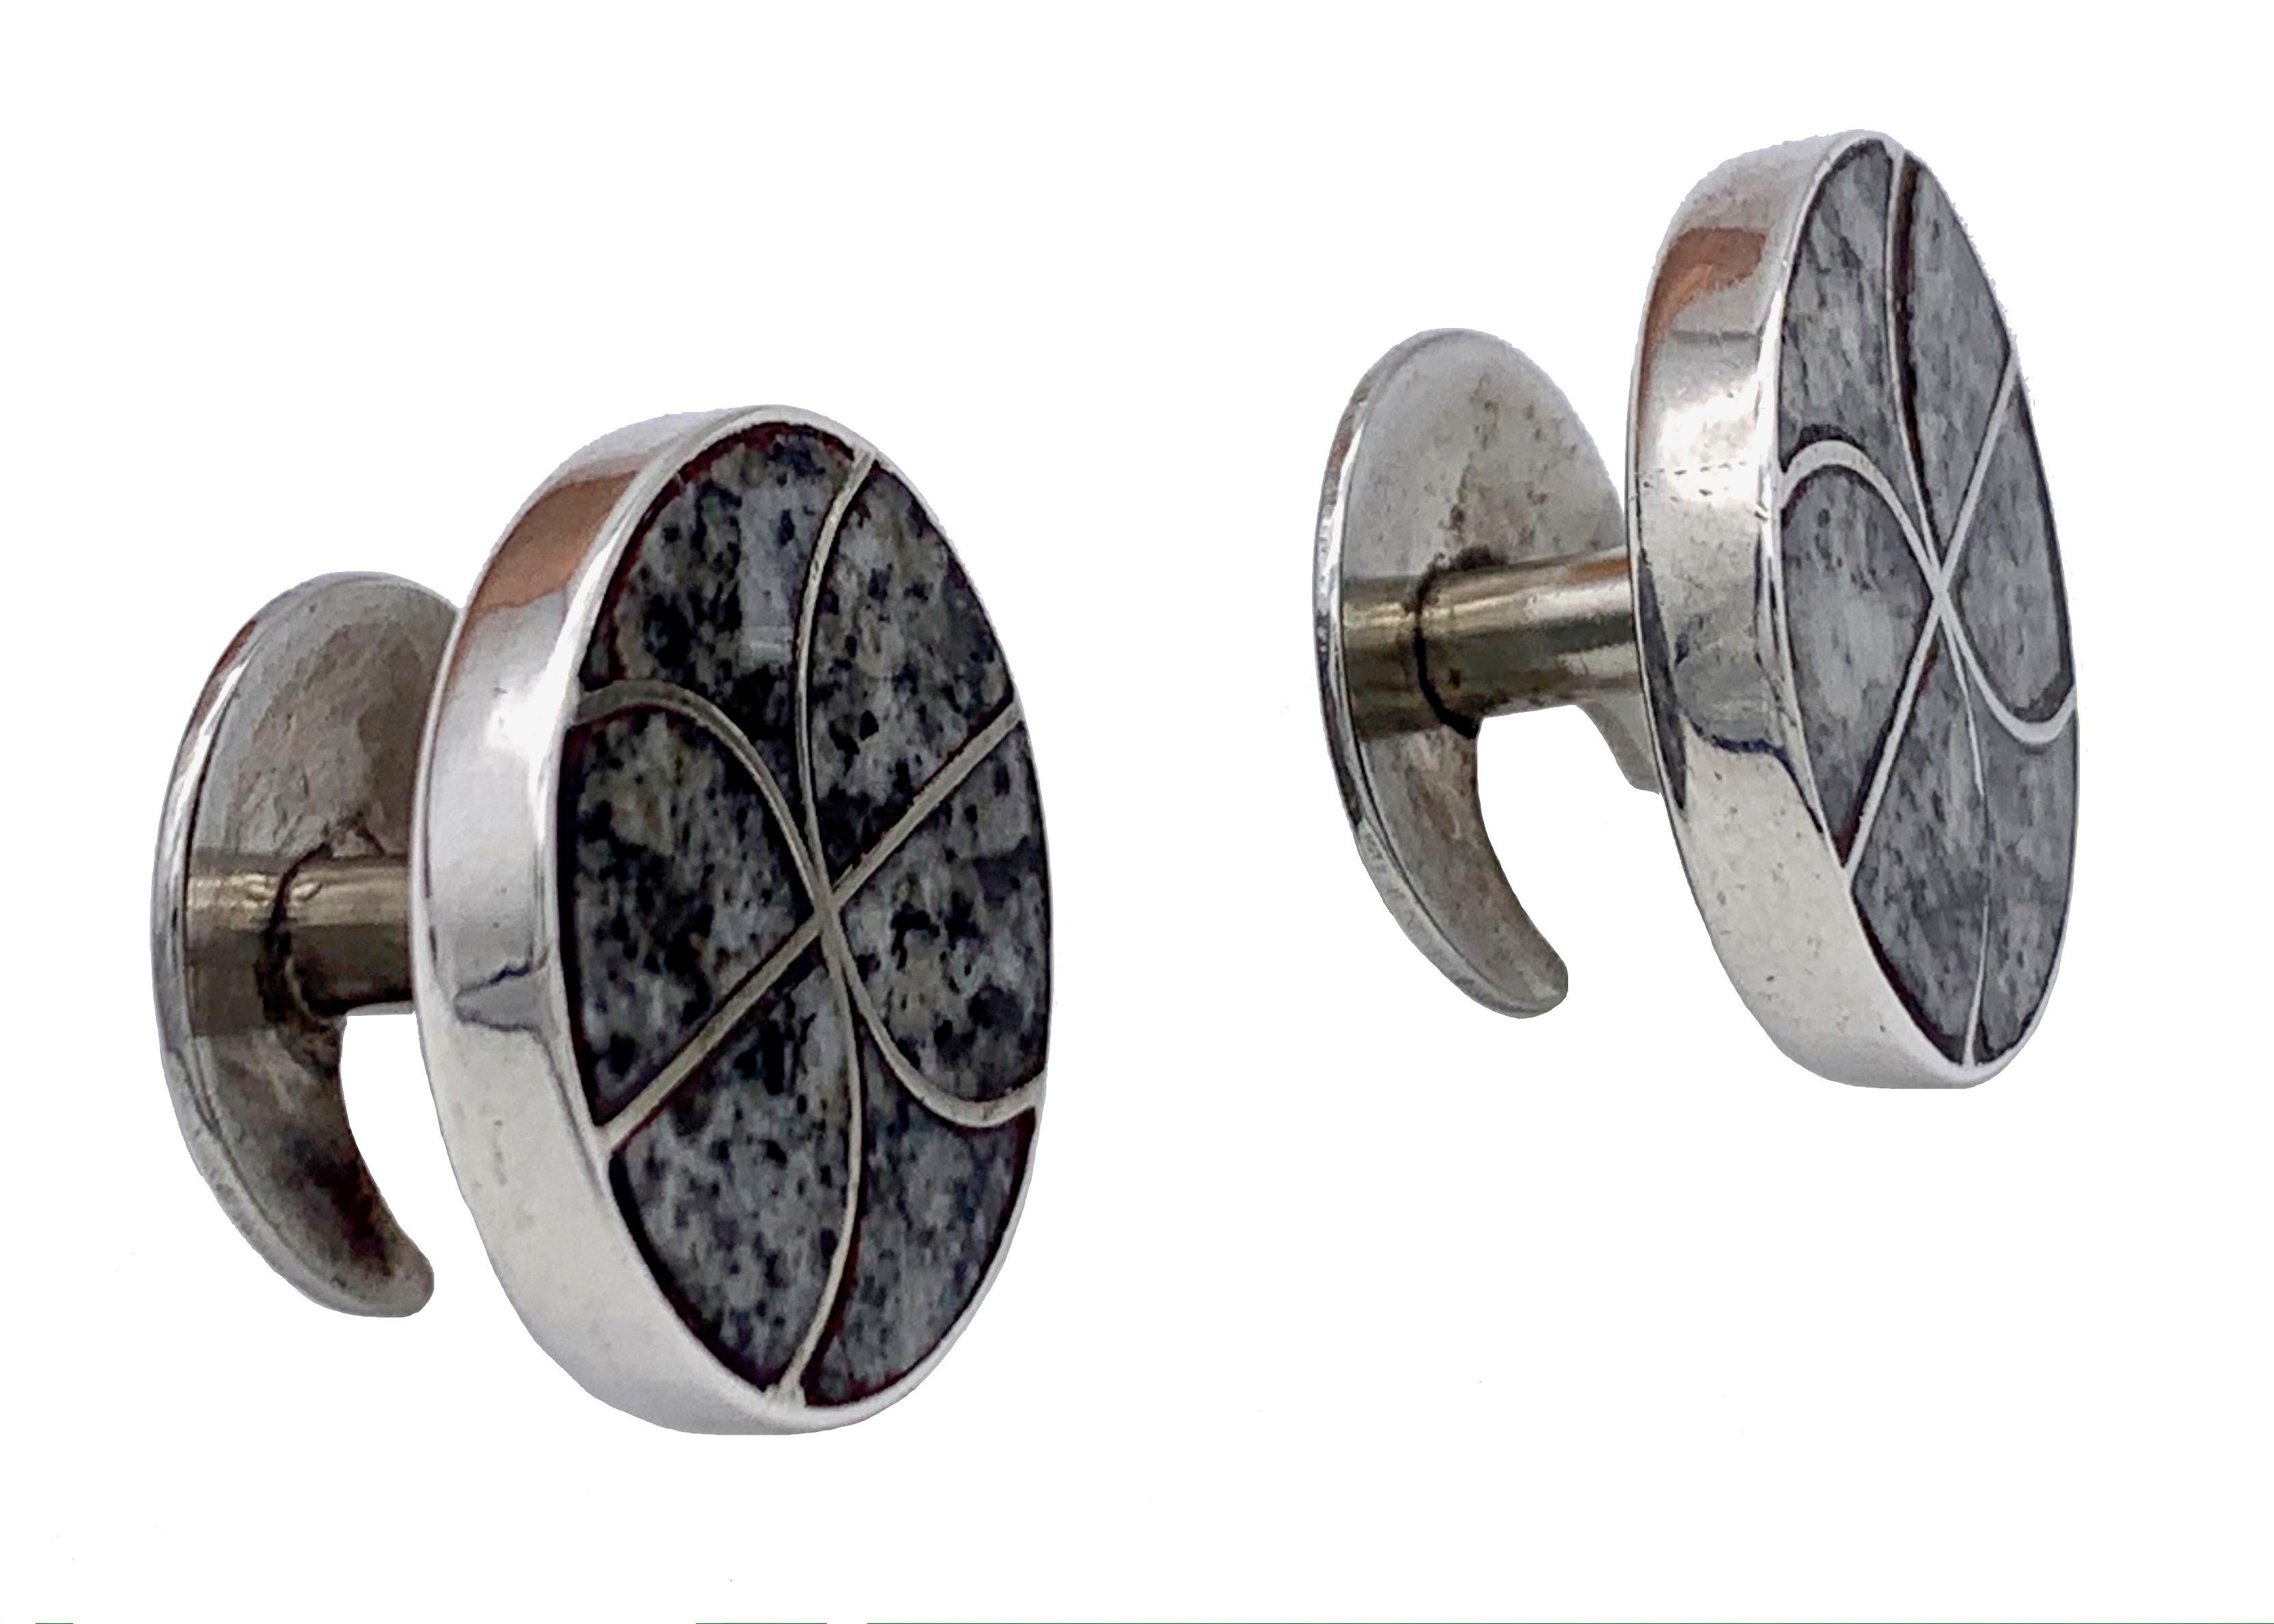 Cette élégante paire de boutons de manchette a été fabriquée dans le dernier quart du XIXe siècle en Écosse, en argent avec des galets incrustés.

Avant de partir chez son nouveau propriétaire, l'argenterie sera polie à la perfection.